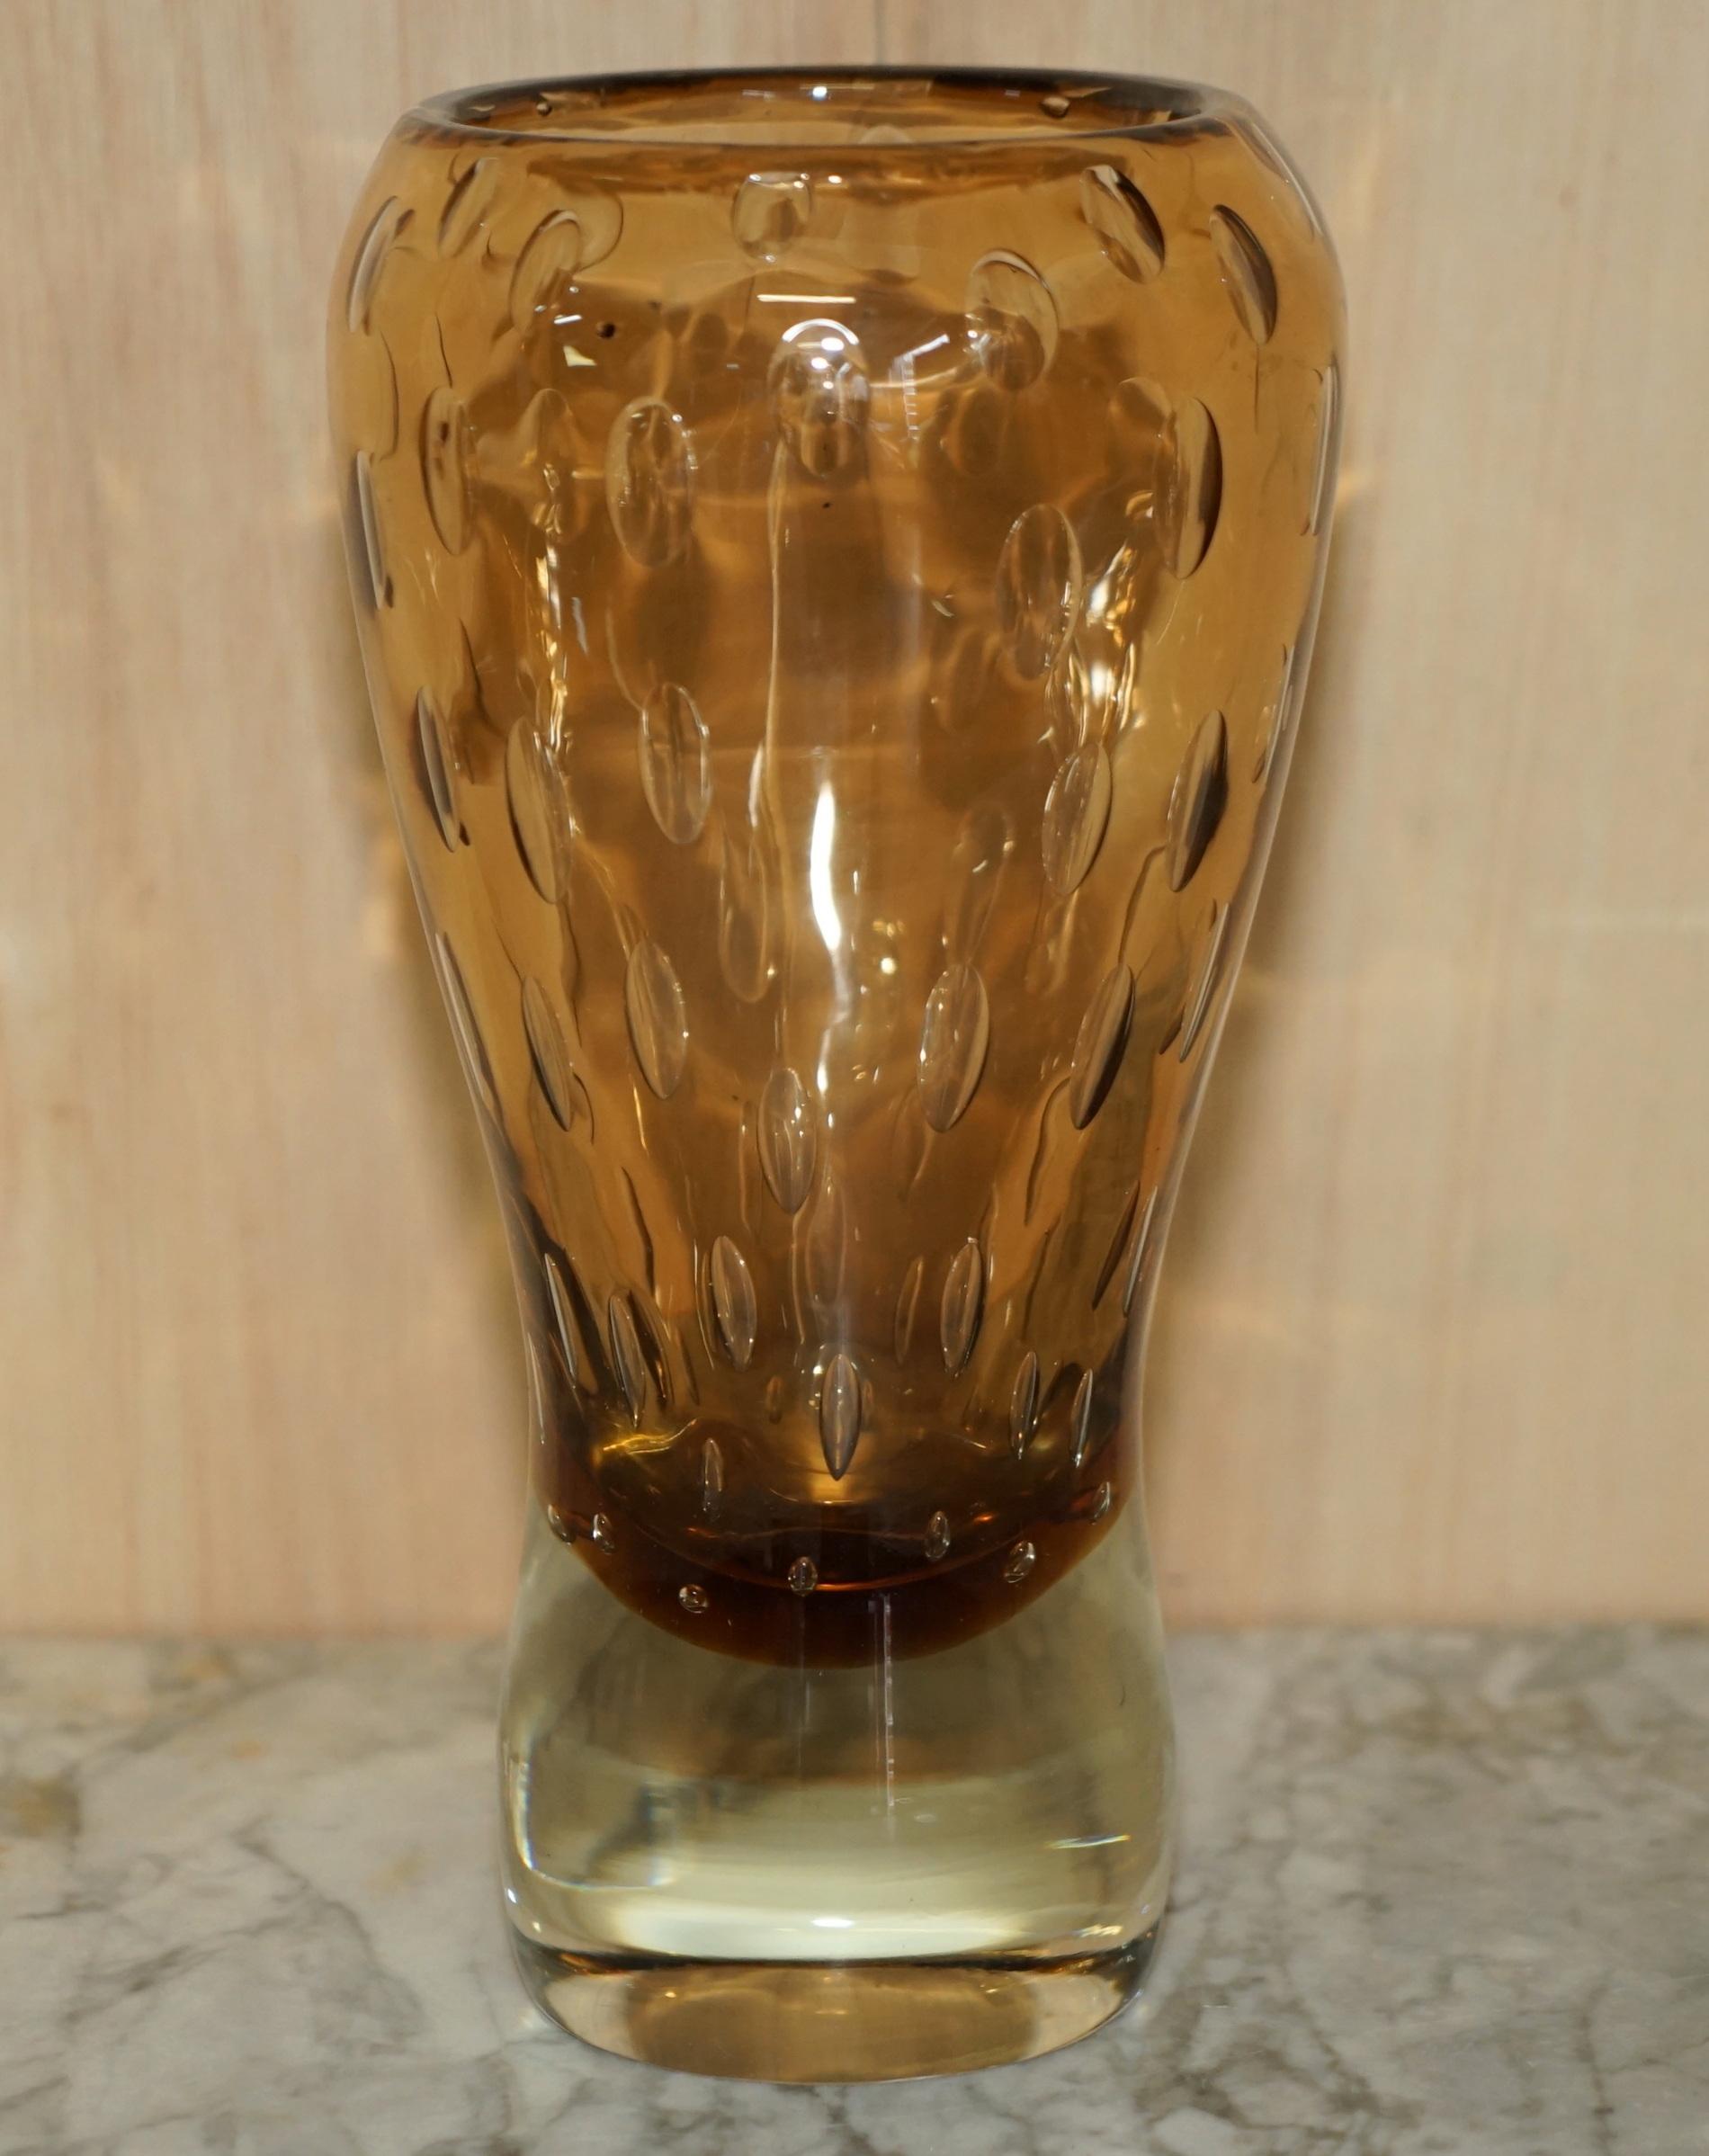 Nous sommes ravis d'offrir à la vente ce magnifique vase en verre bulle flottant, unique en son genre.

Cette pièce est sublime sous tous les angles, elle ne présente aucun dommage que je puisse voir, elle est très